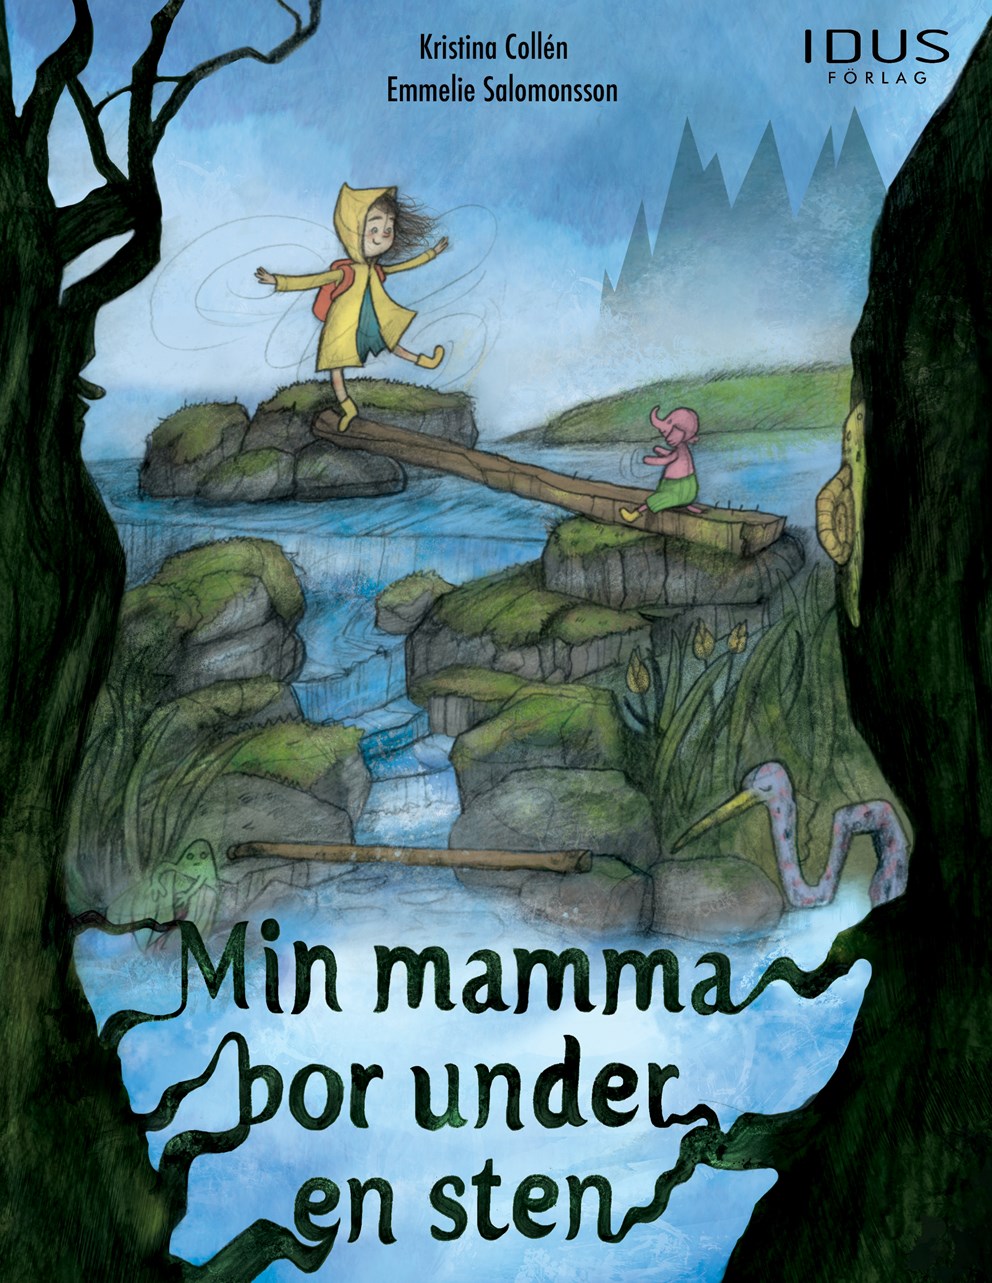 Omslag till boken "Min mamma bor under en sten"